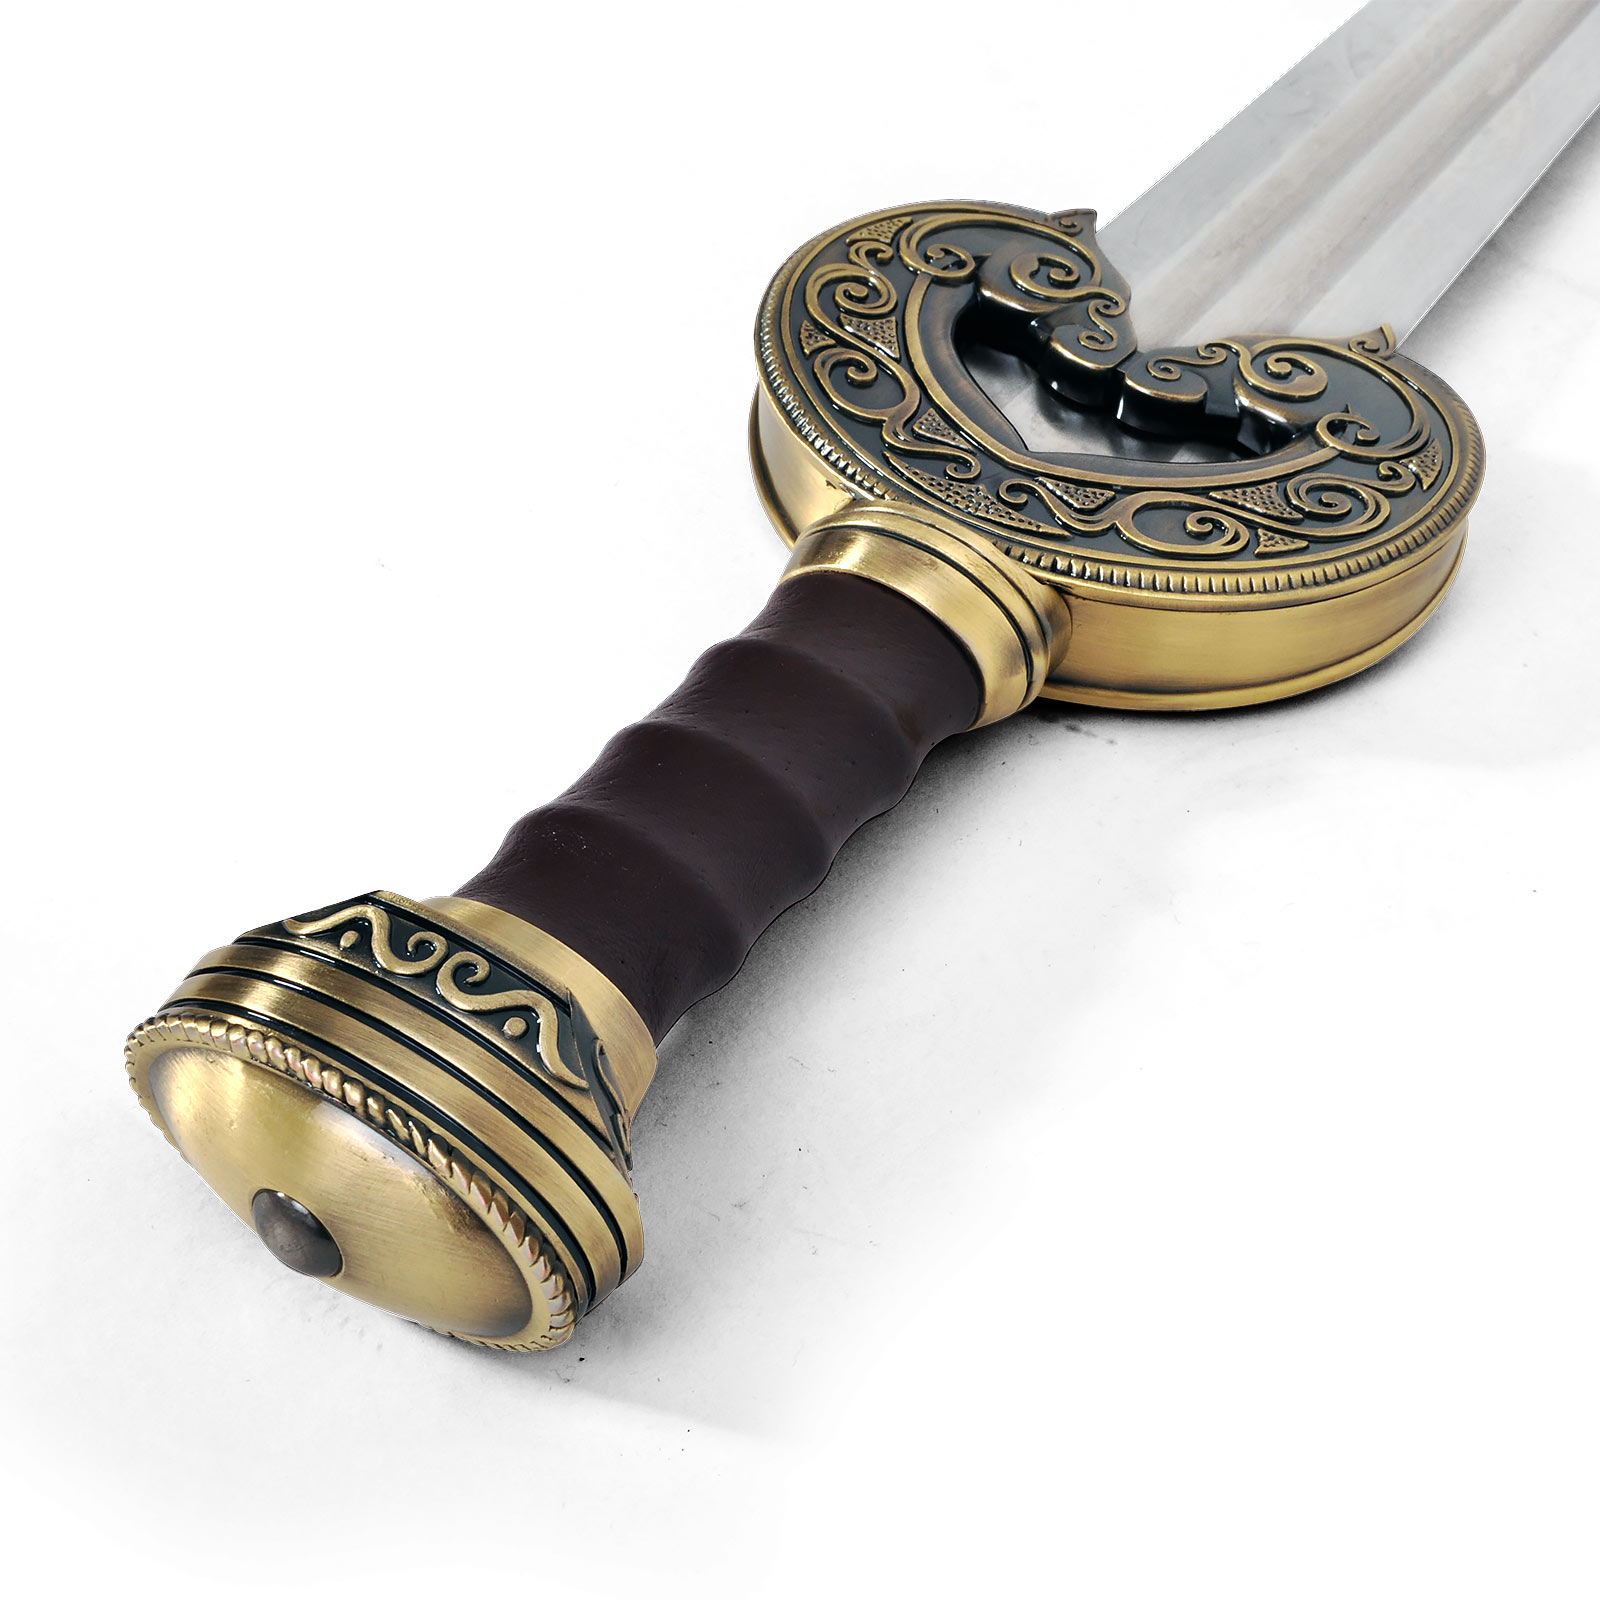 Réplique de l'épée d'Herugrim Theoden - Le Seigneur des Anneaux